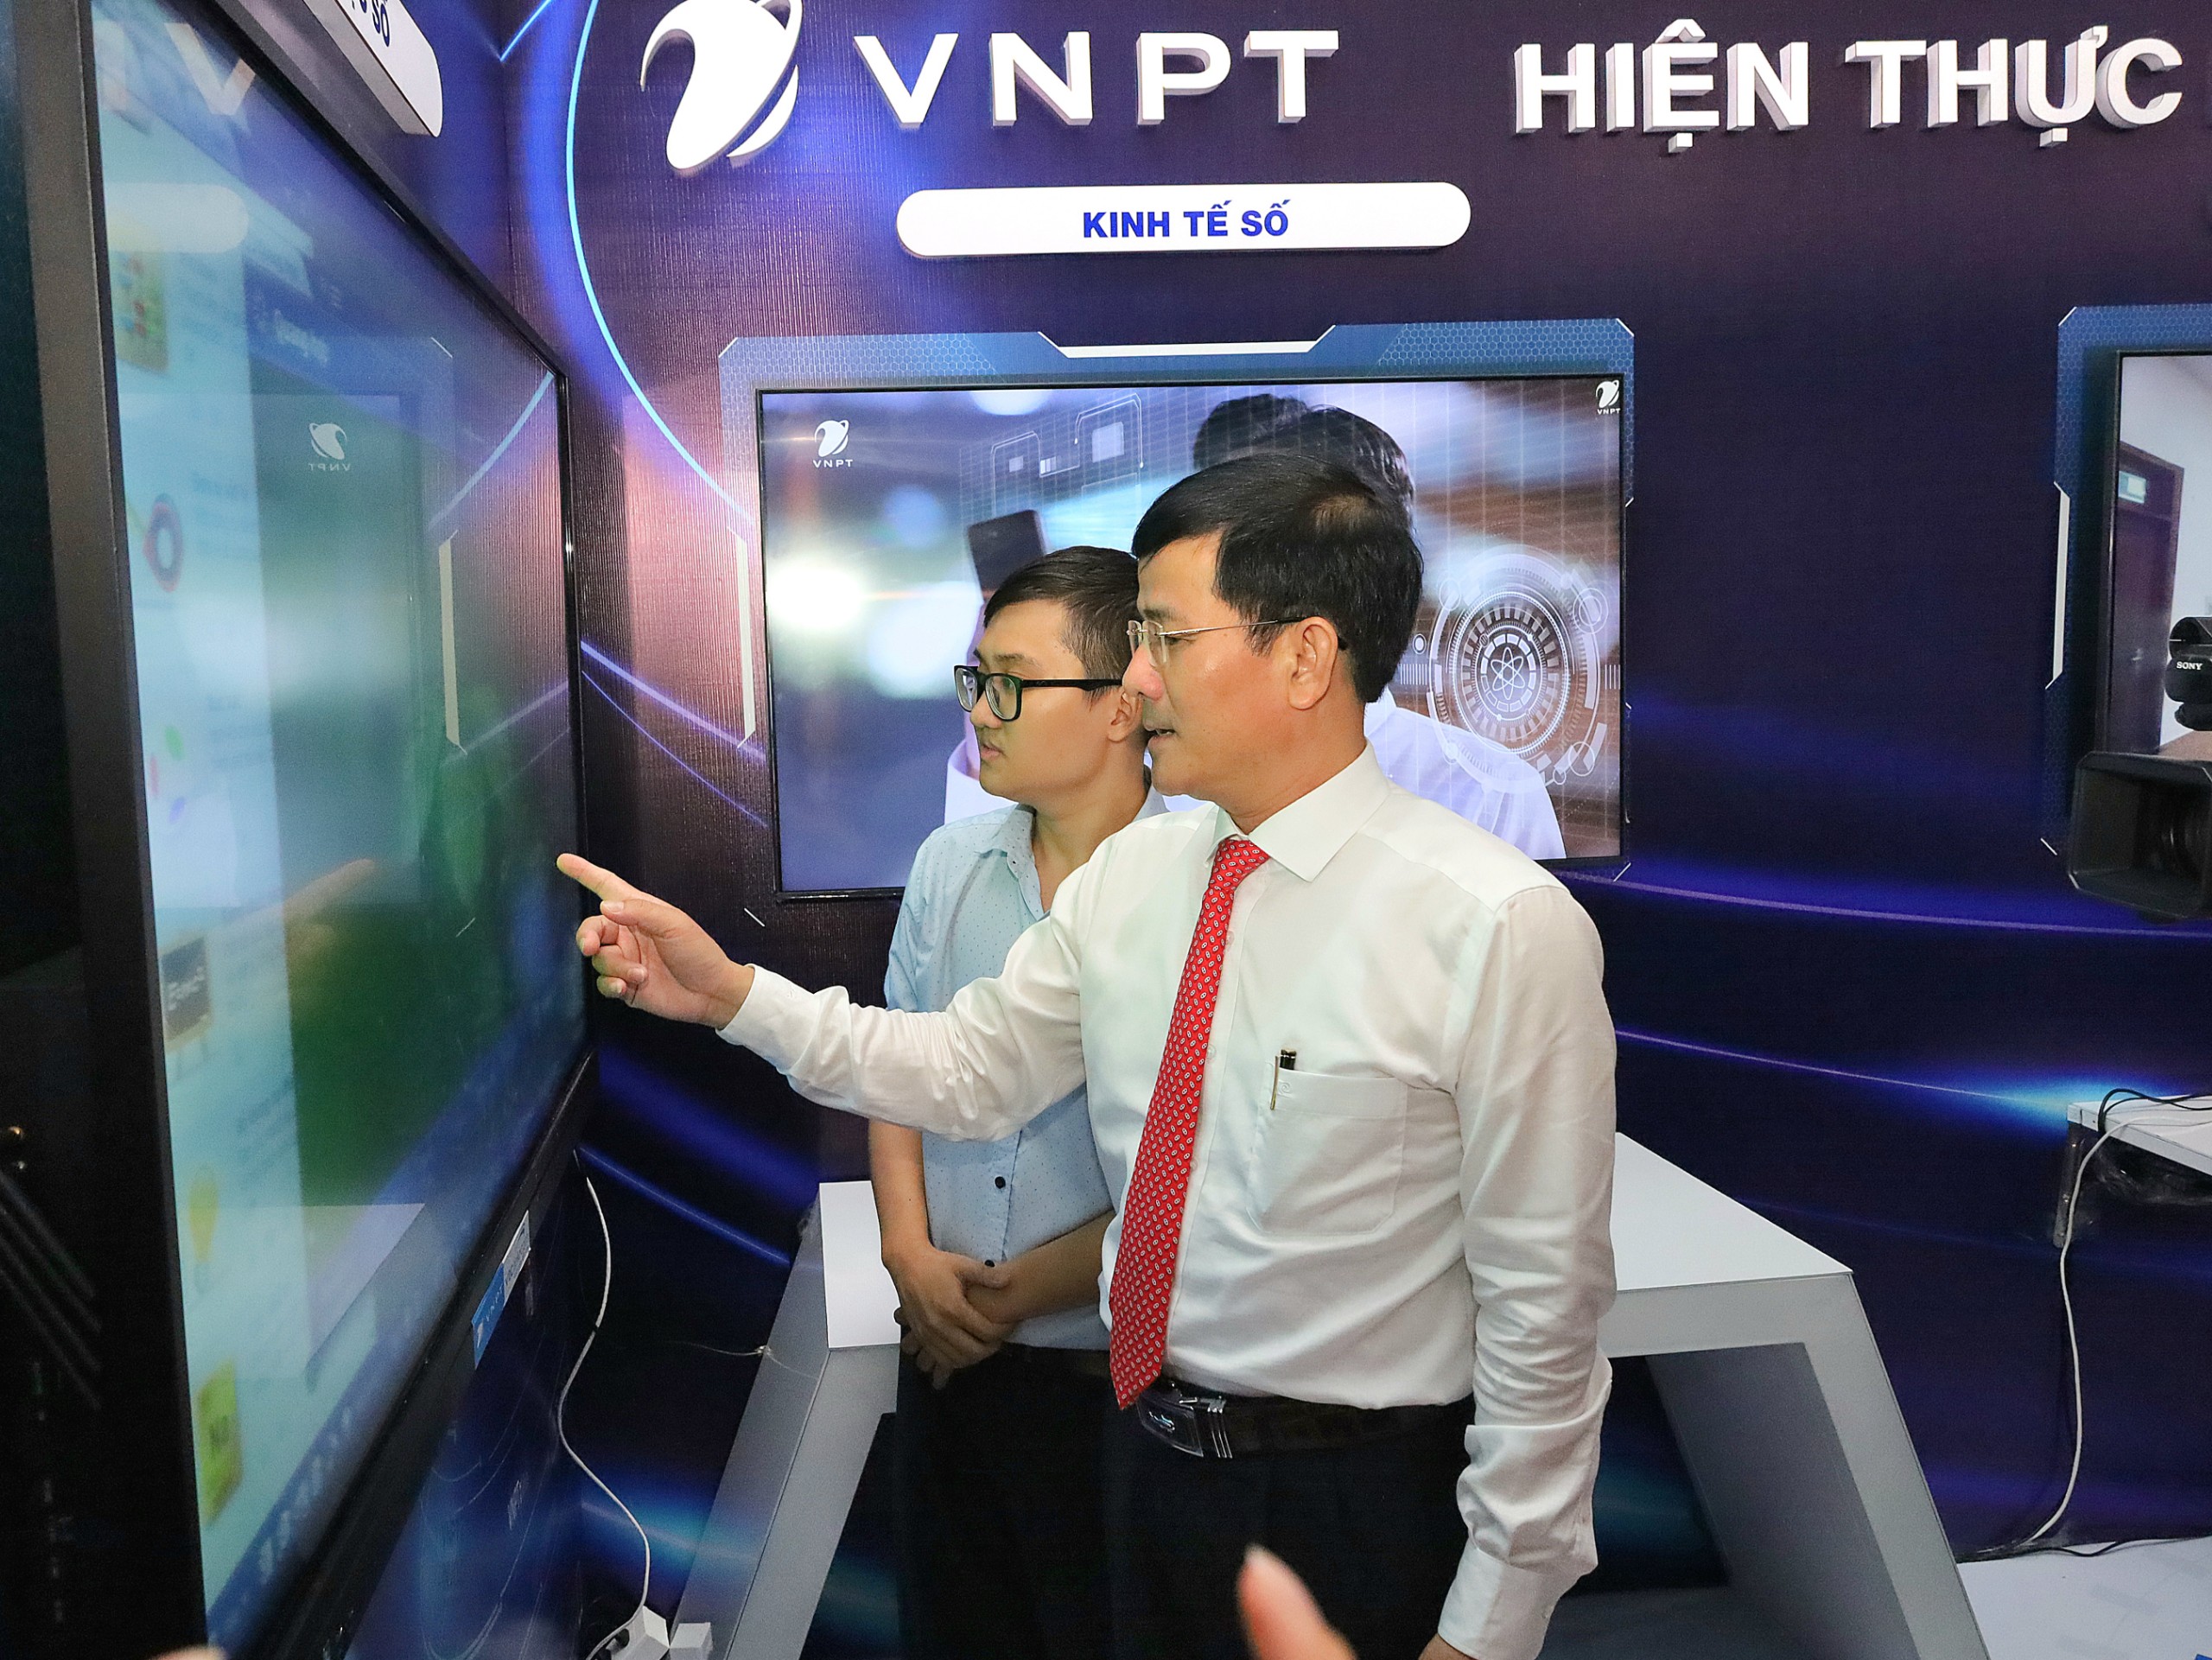 Ông Trần Văn Huyến - Phó Bí thư Thường trực Tỉnh ủy, Chủ tịch HĐND tỉnh Hậu Giang trải nghiệm sản phẩm trựng bày tại chương trình.